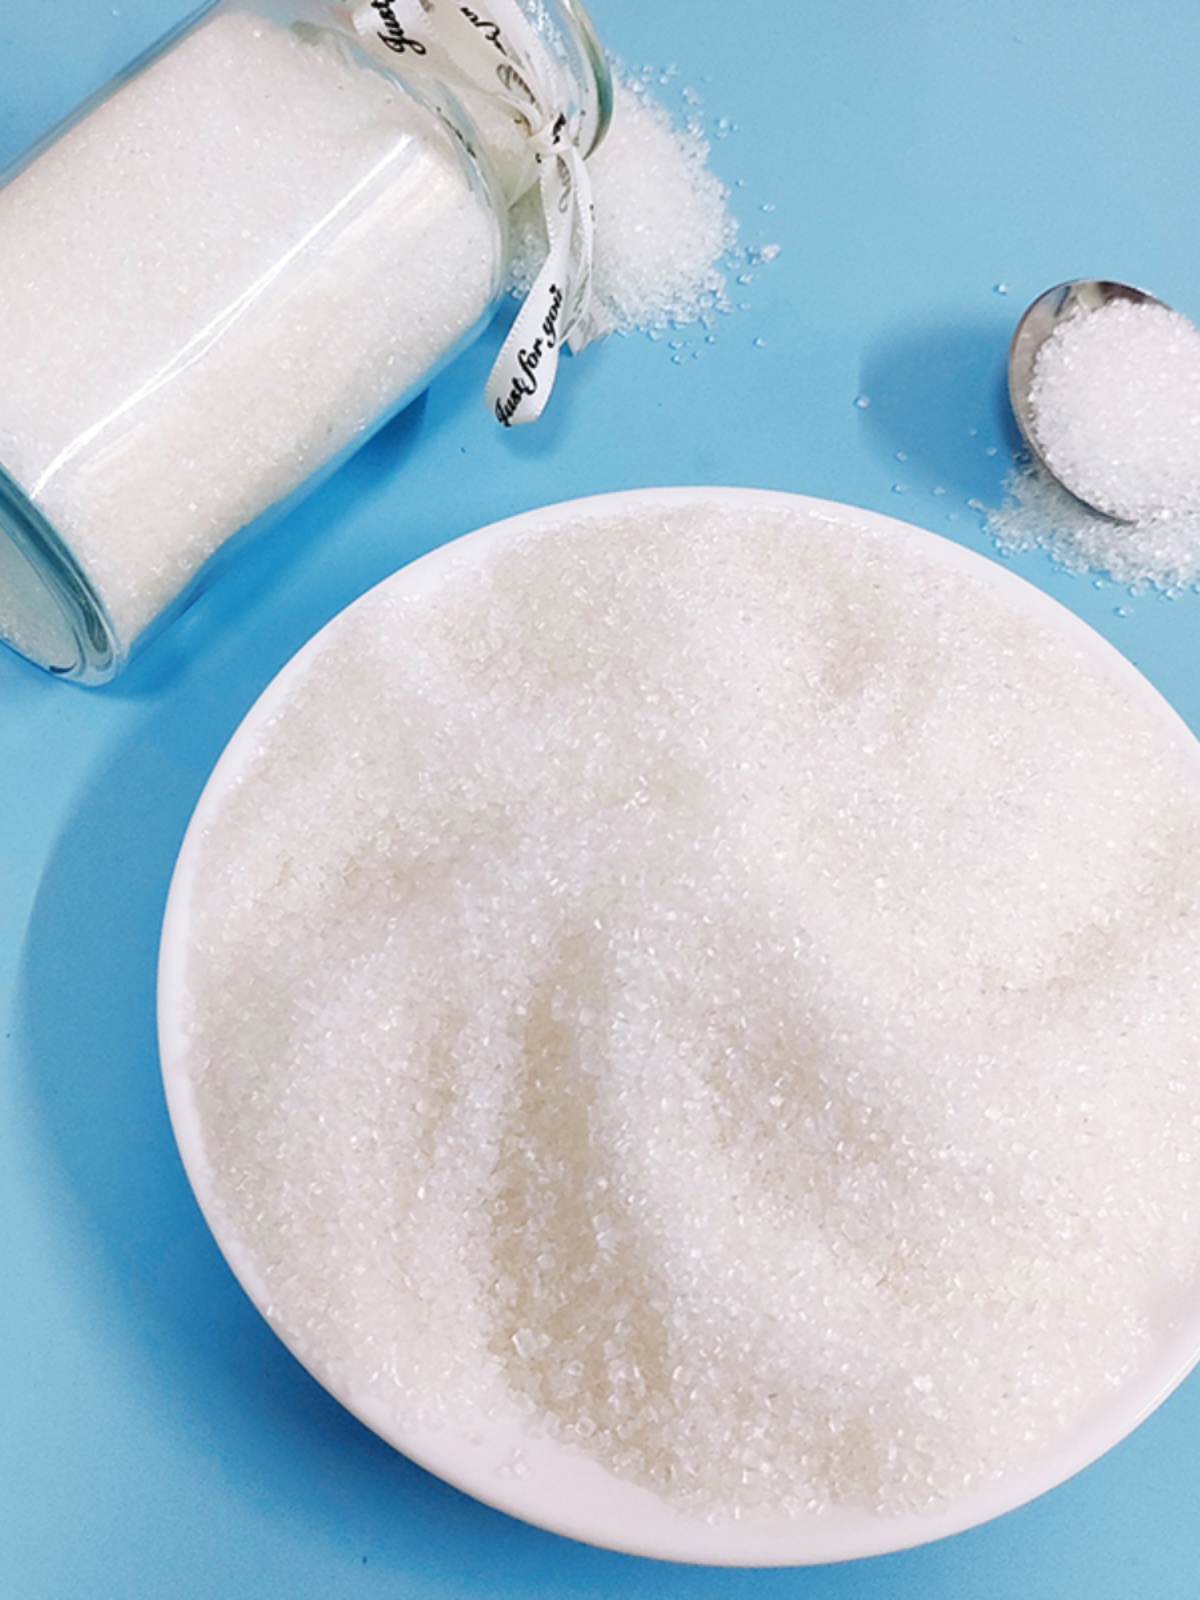 广西优质一级白糖5斤散装纯甘蔗细白砂细砂糖可打糖粉糖霜食用糖